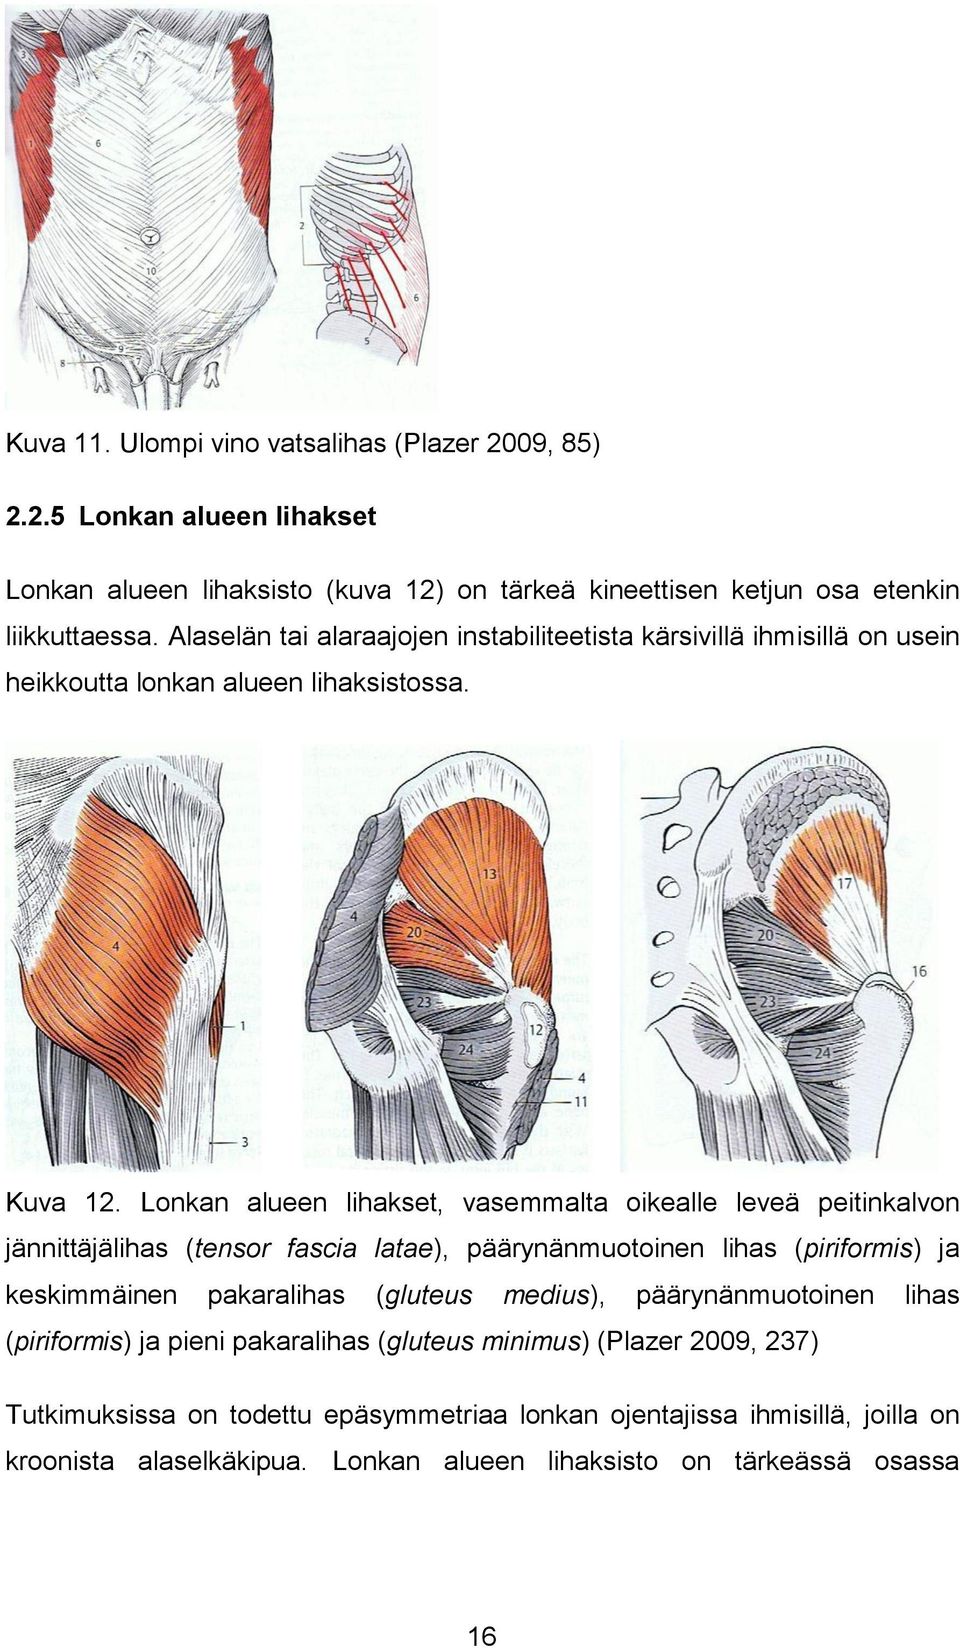 Lonkan alueen lihakset, vasemmalta oikealle leveä peitinkalvon jännittäjälihas (tensor fascia latae), päärynänmuotoinen lihas (piriformis) ja keskimmäinen pakaralihas (gluteus